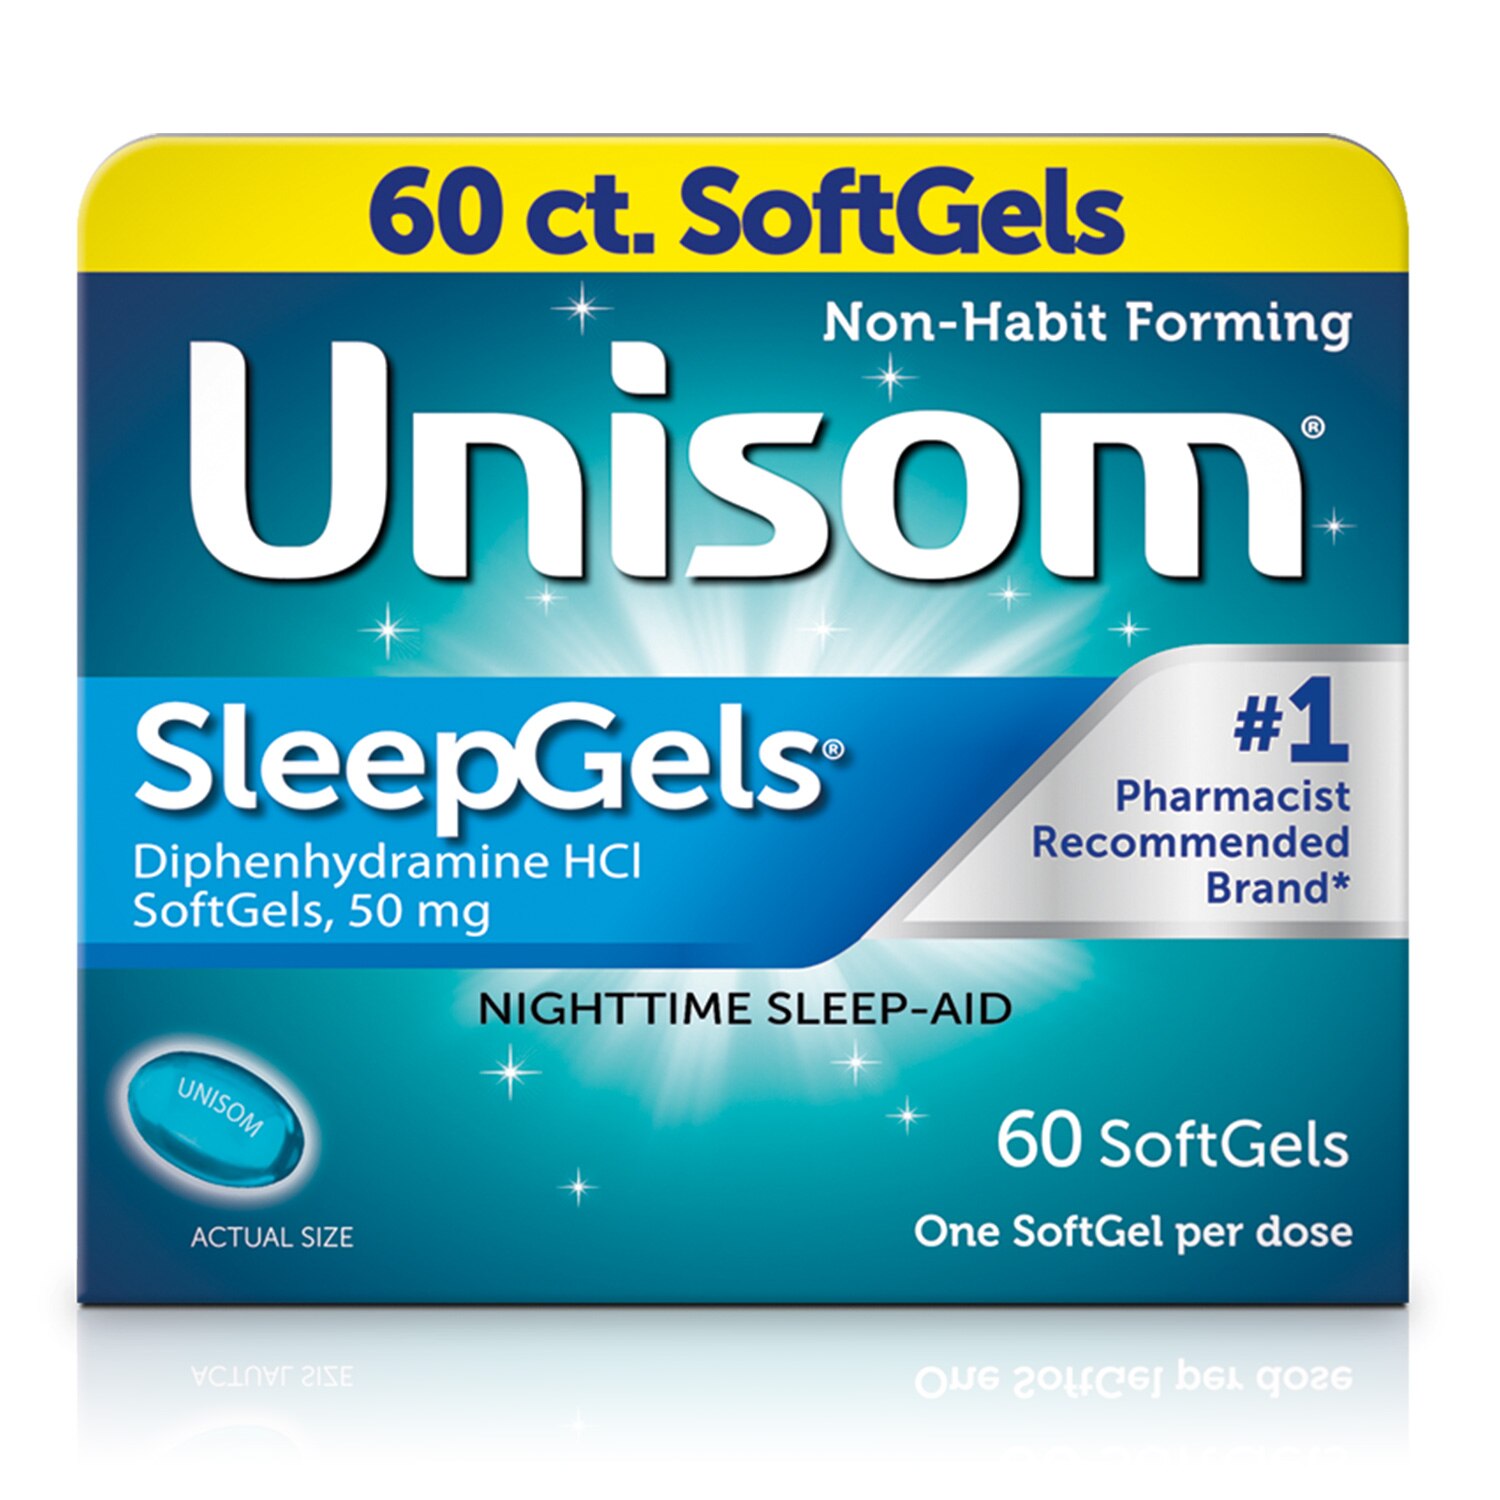 Unisom SleepGels SoftGels, Sleep-Aid, Diphenhydramine HCI, 60 CT